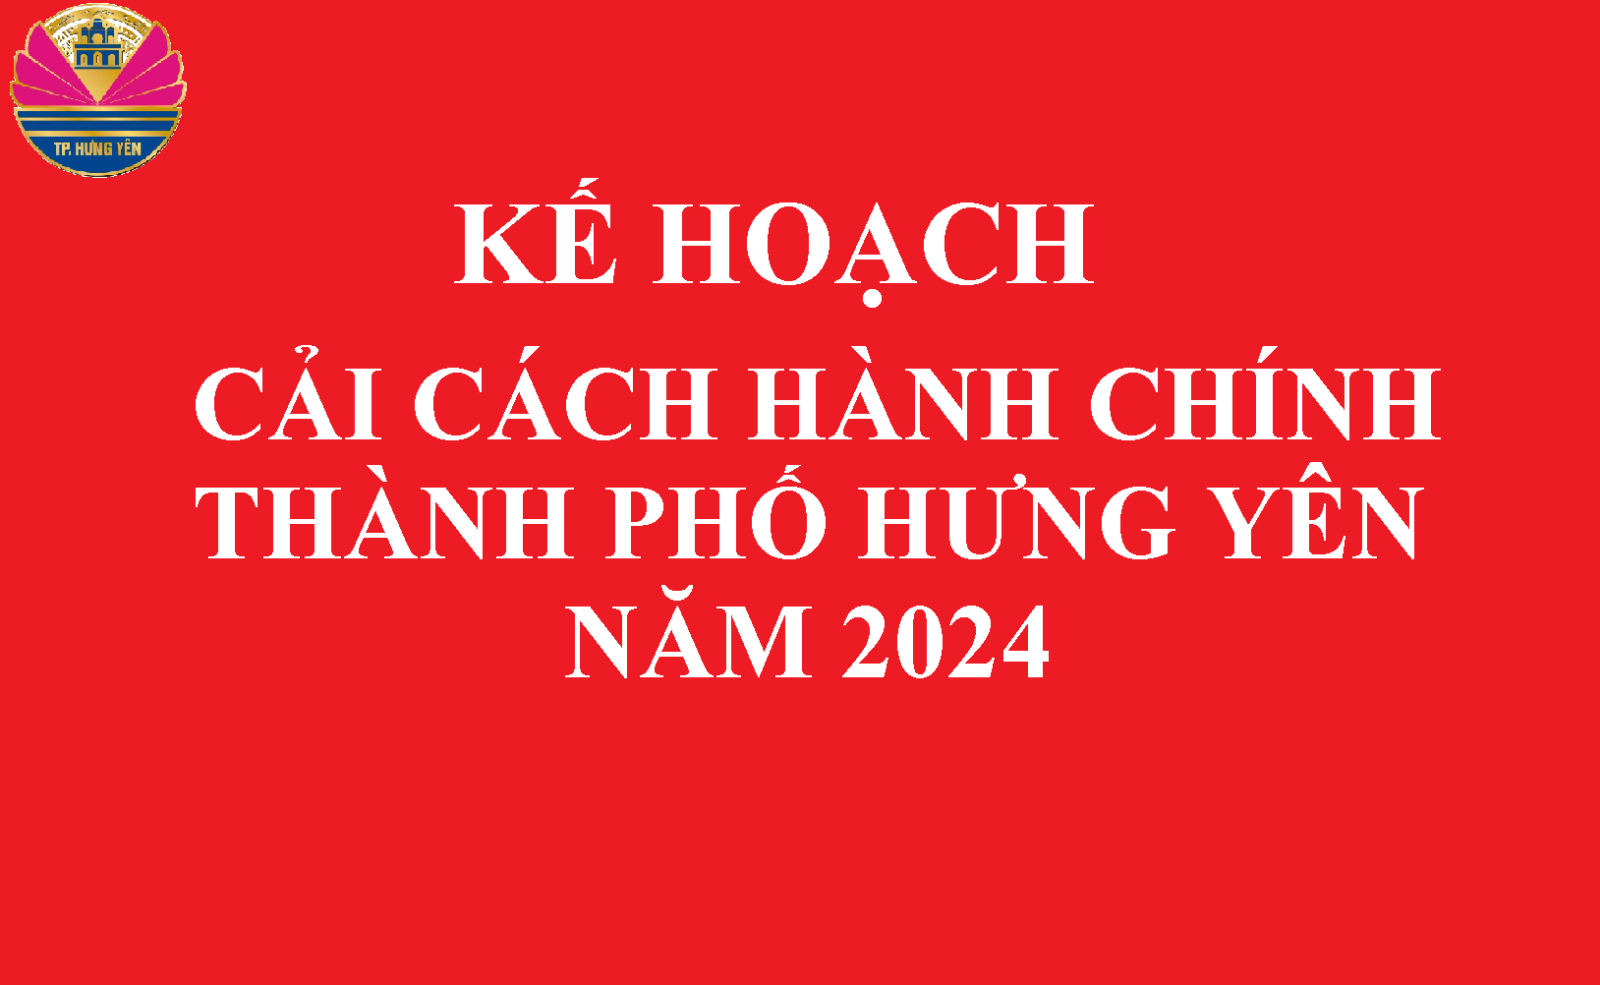 Kế hoạch Cải cách hành chính thành phố Hưng Yên năm 2024